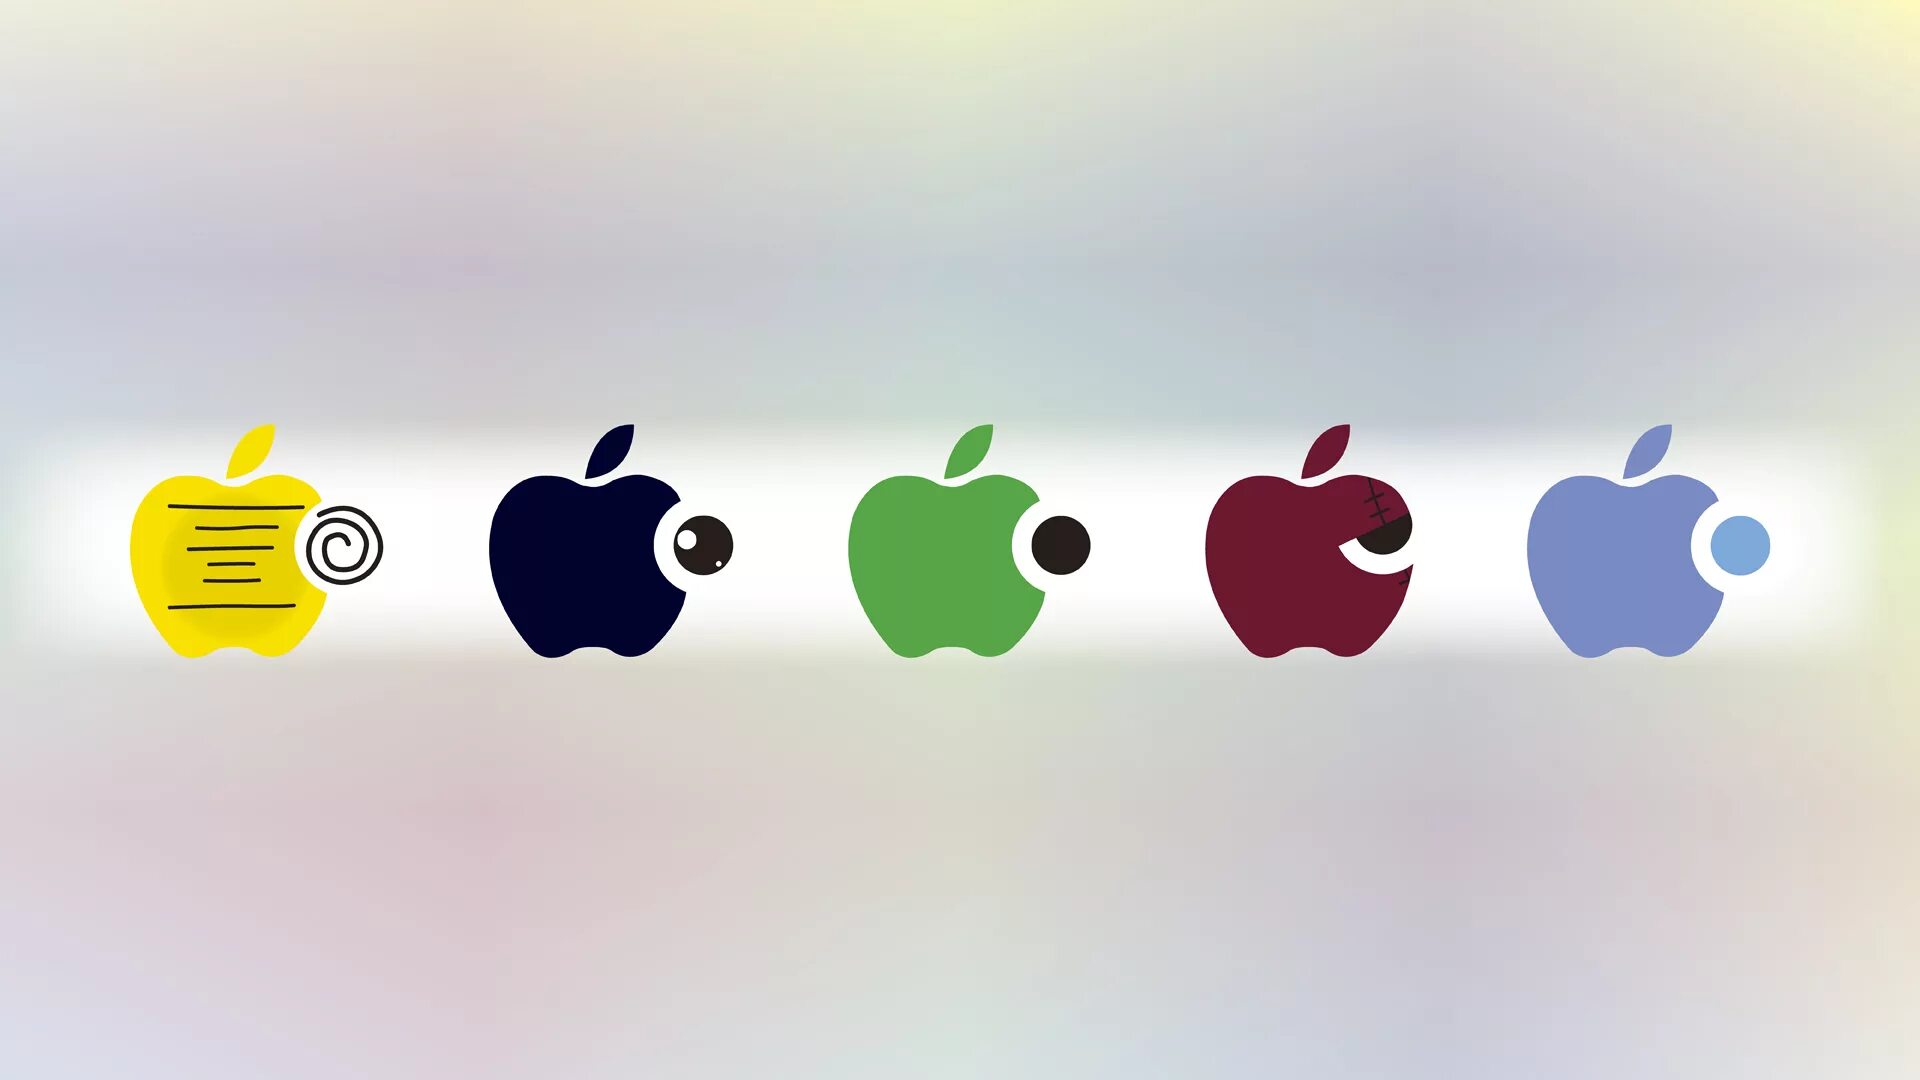 Делать обои на айфон. Смешные логотипы Apple. Обои на айфон. Угарные логотип Эппл. Прикольные обои на айфон.